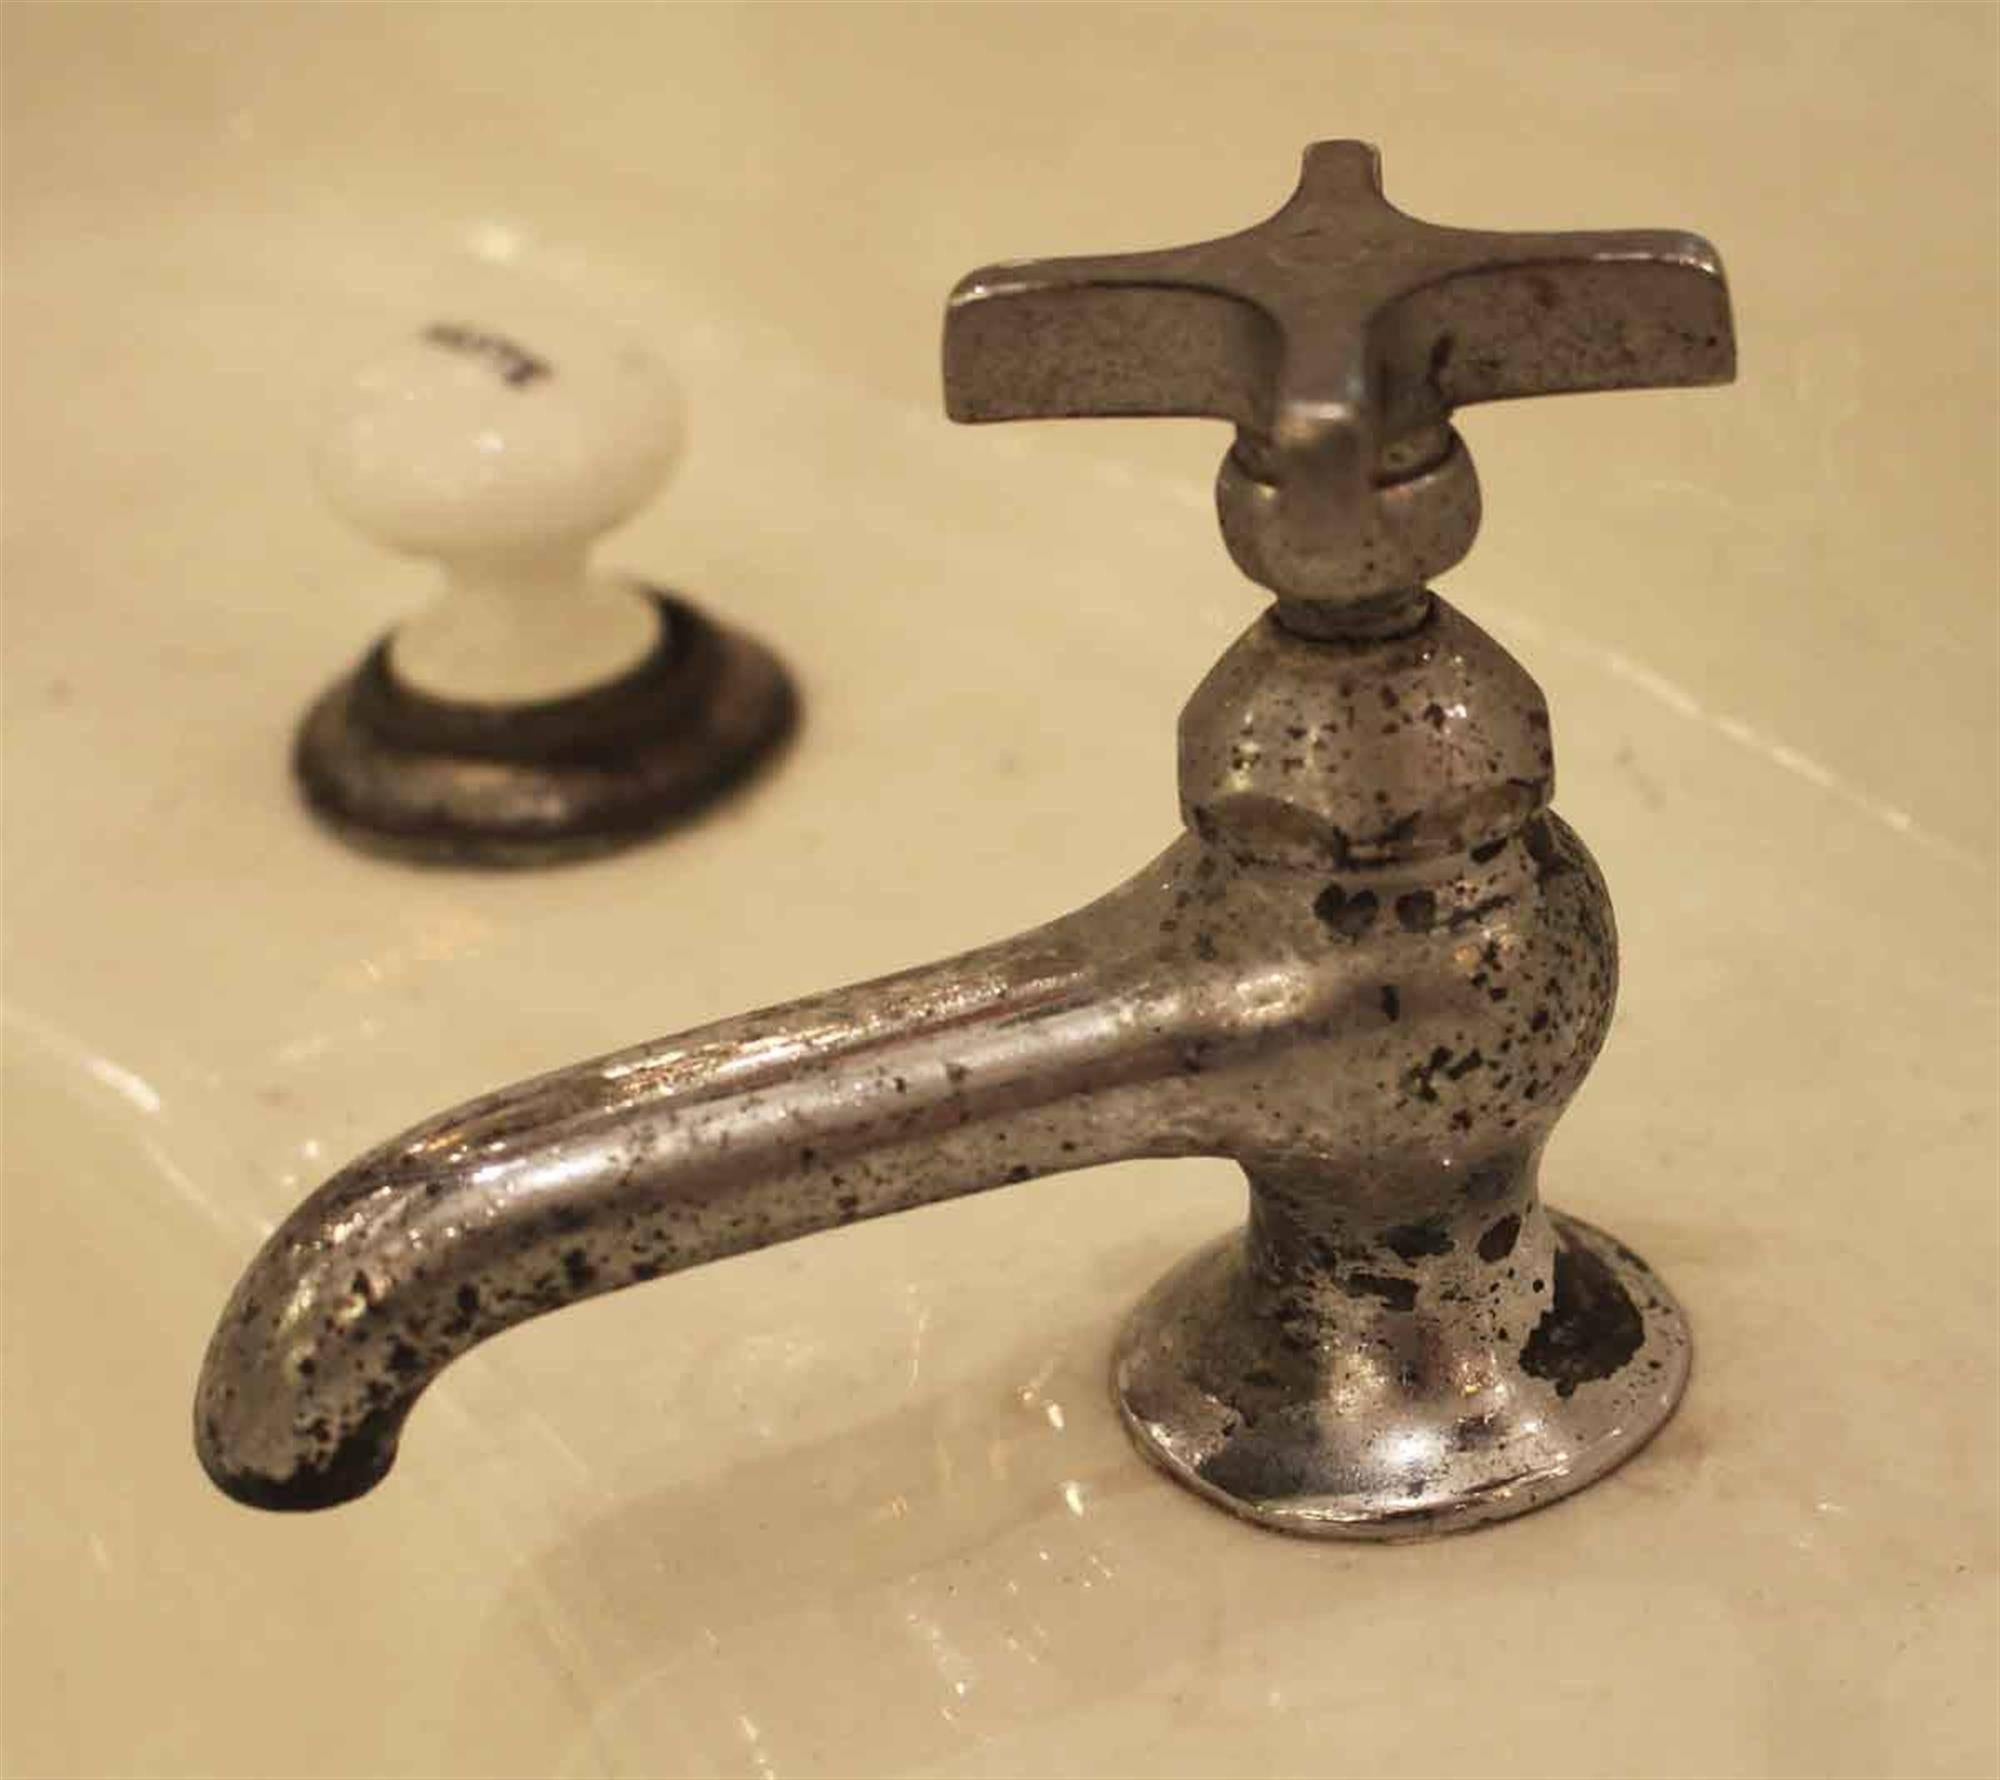 pedestal sinks with backsplash